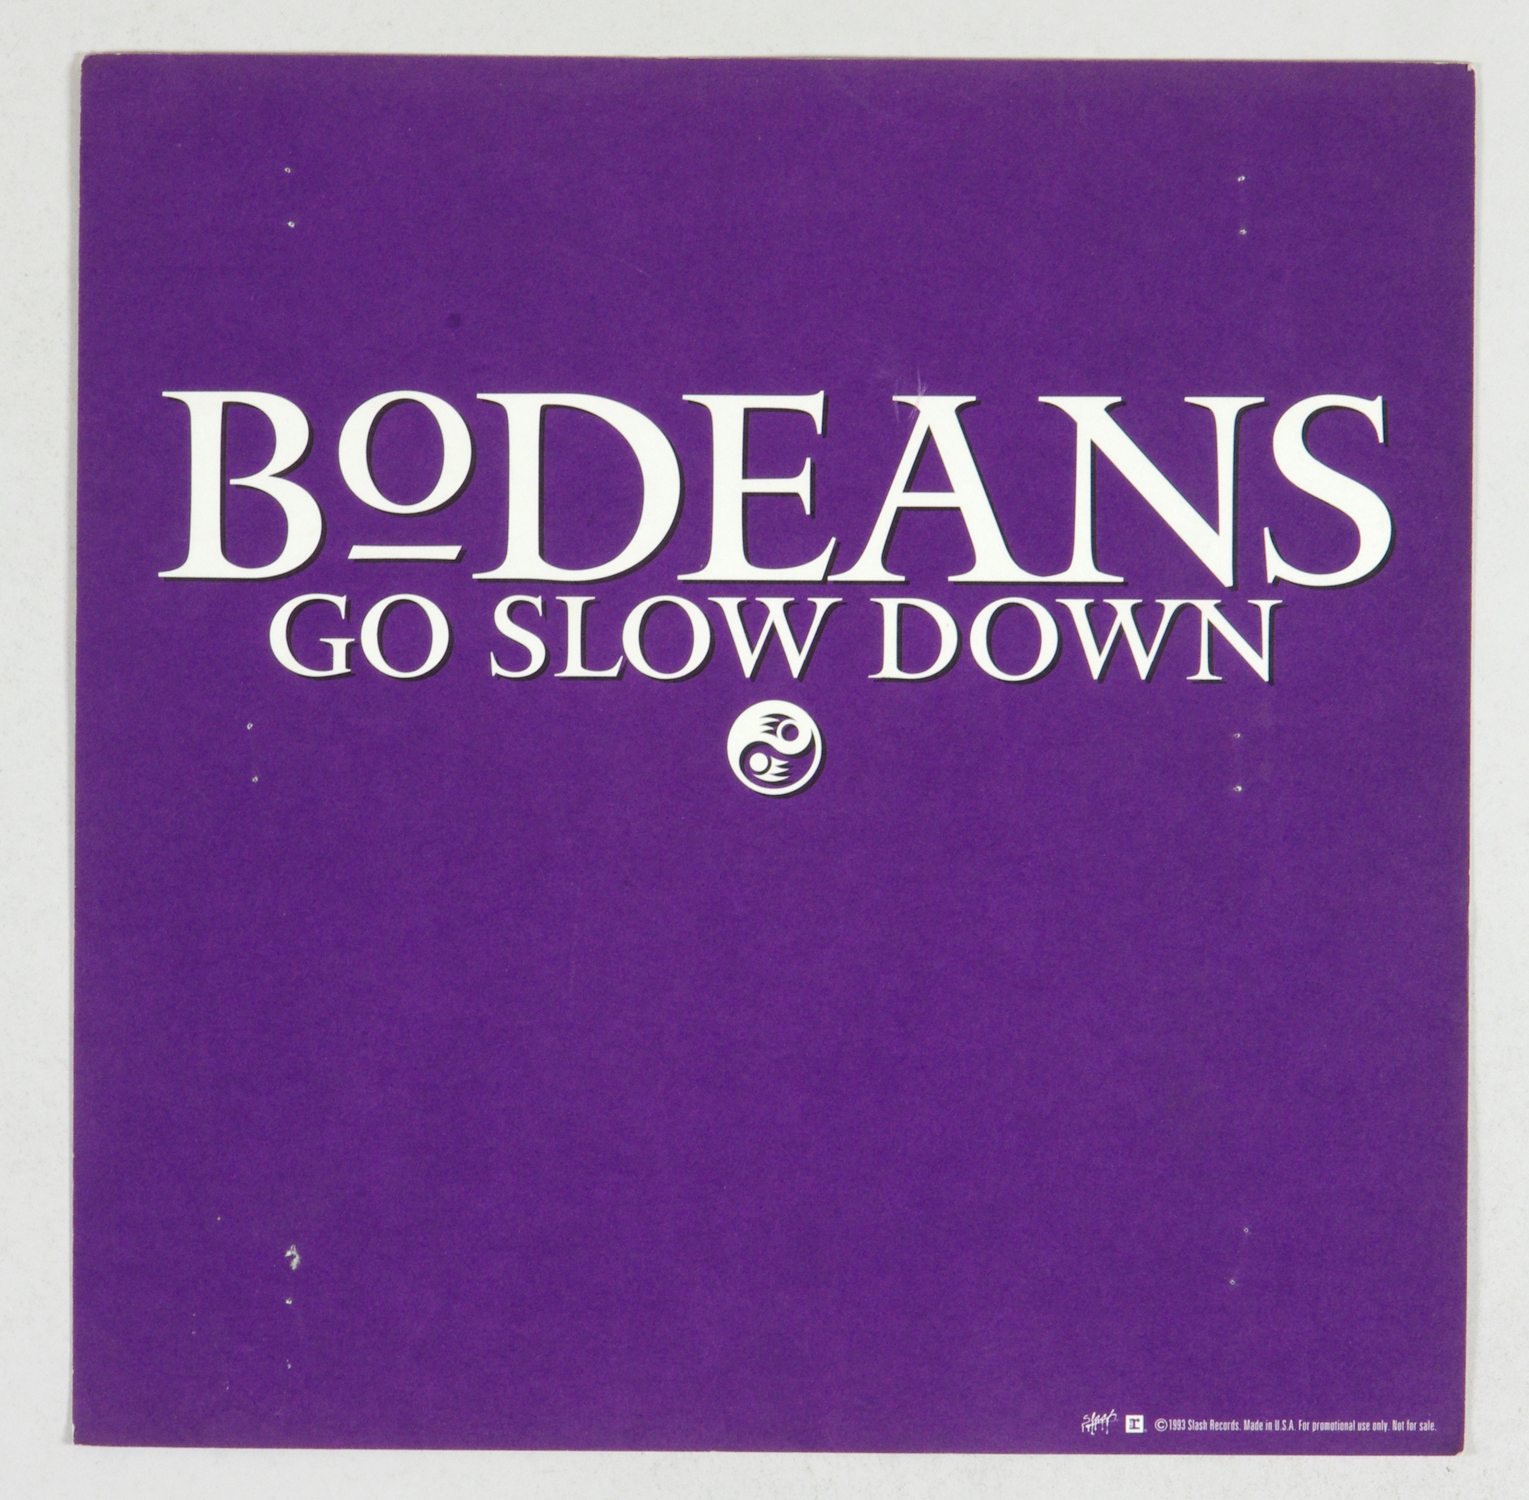 BoDeans Poster Flat 1993 Go Slow Down Album Promotion 12 x 12 